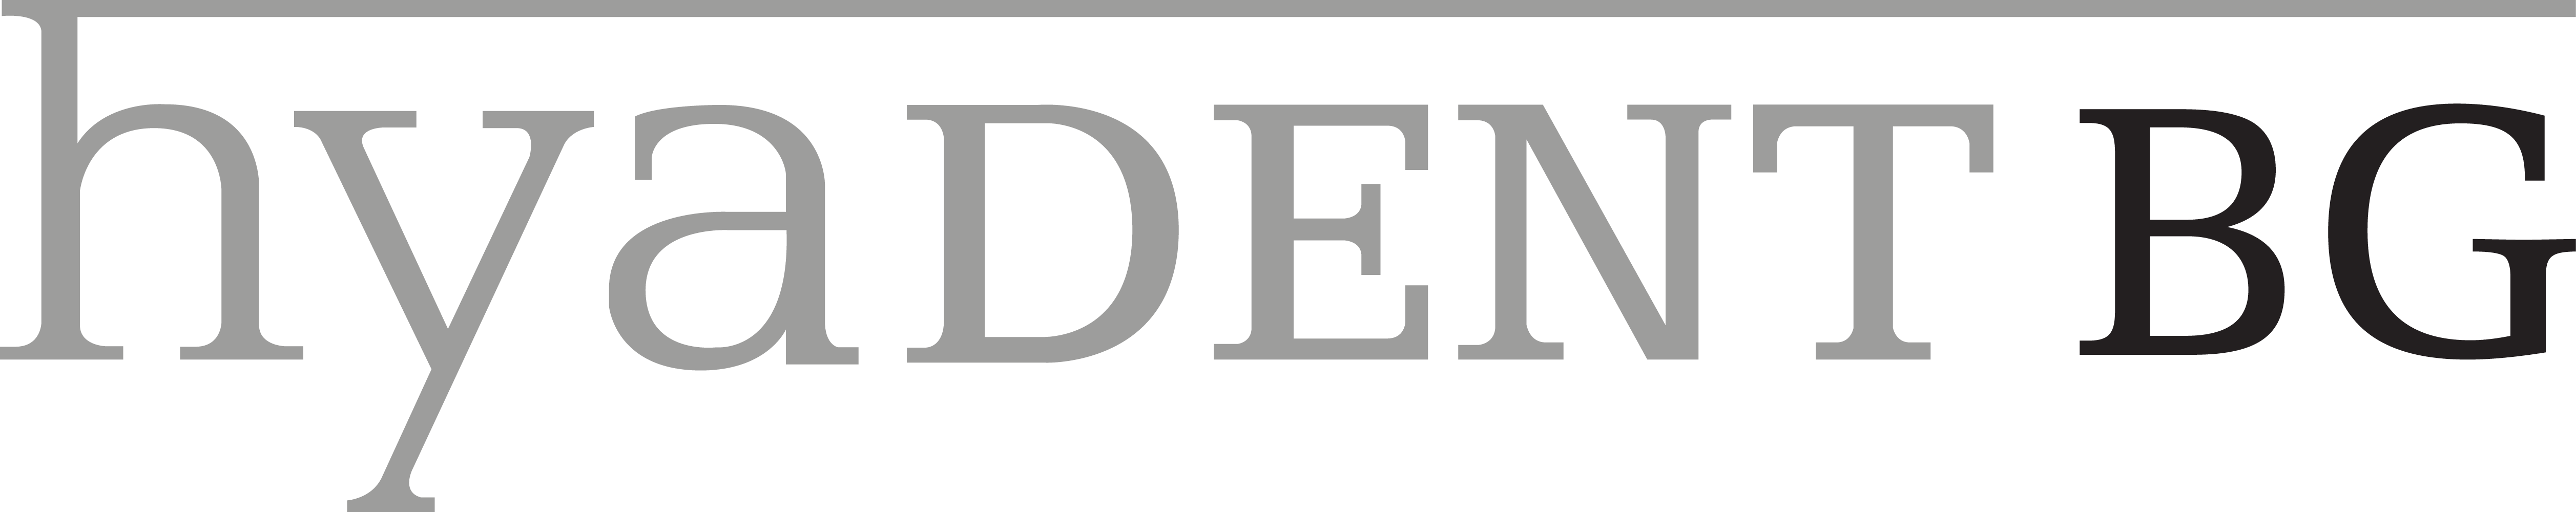 logo hyadent BG